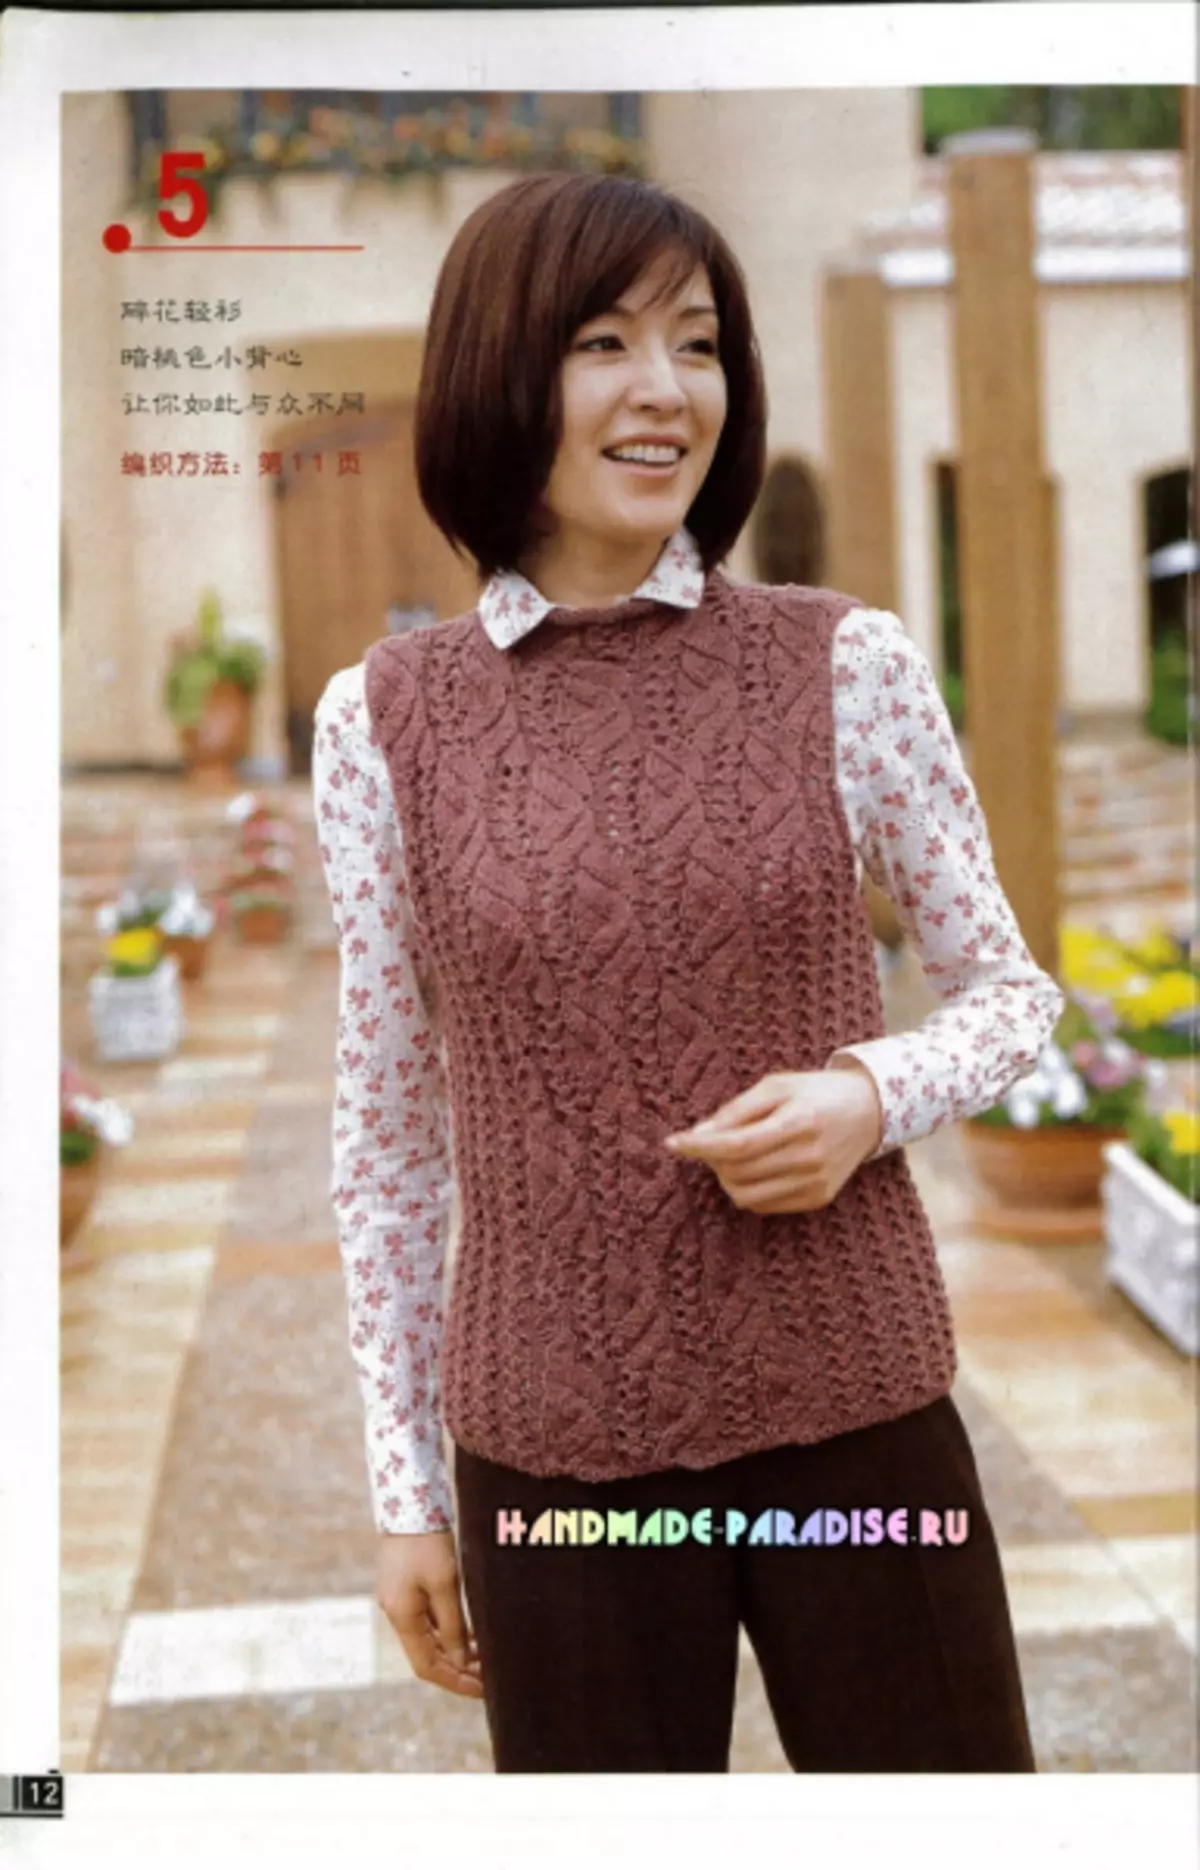 Aiguilles à tricoter d'hiver pour les femmes. Magazine avec des régimes